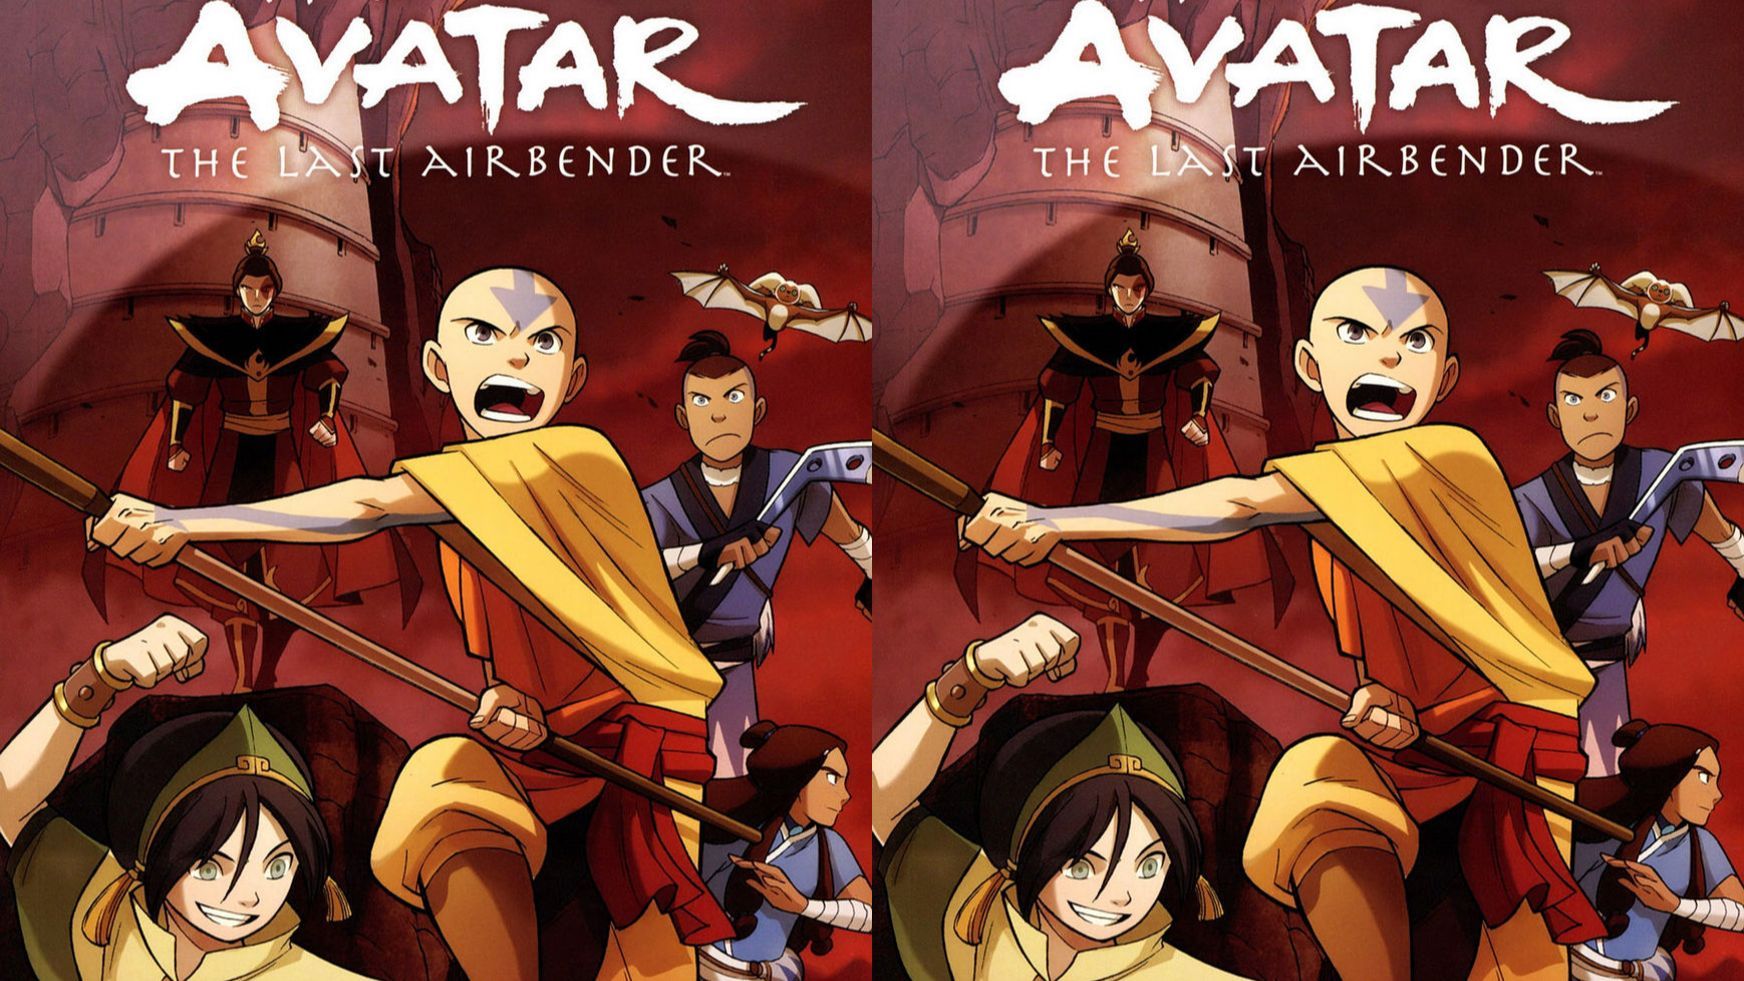 Avatar Tiết Khí Sư Cuối Cùng Tập 7 - Xem ngay Tập 7 của bộ phim hoạt hình 3D Avatar Tiết Khí Sư Cuối Cùng, theo dõi cuộc phiêu lưu của các nhân vật để giải cứu thế giới.